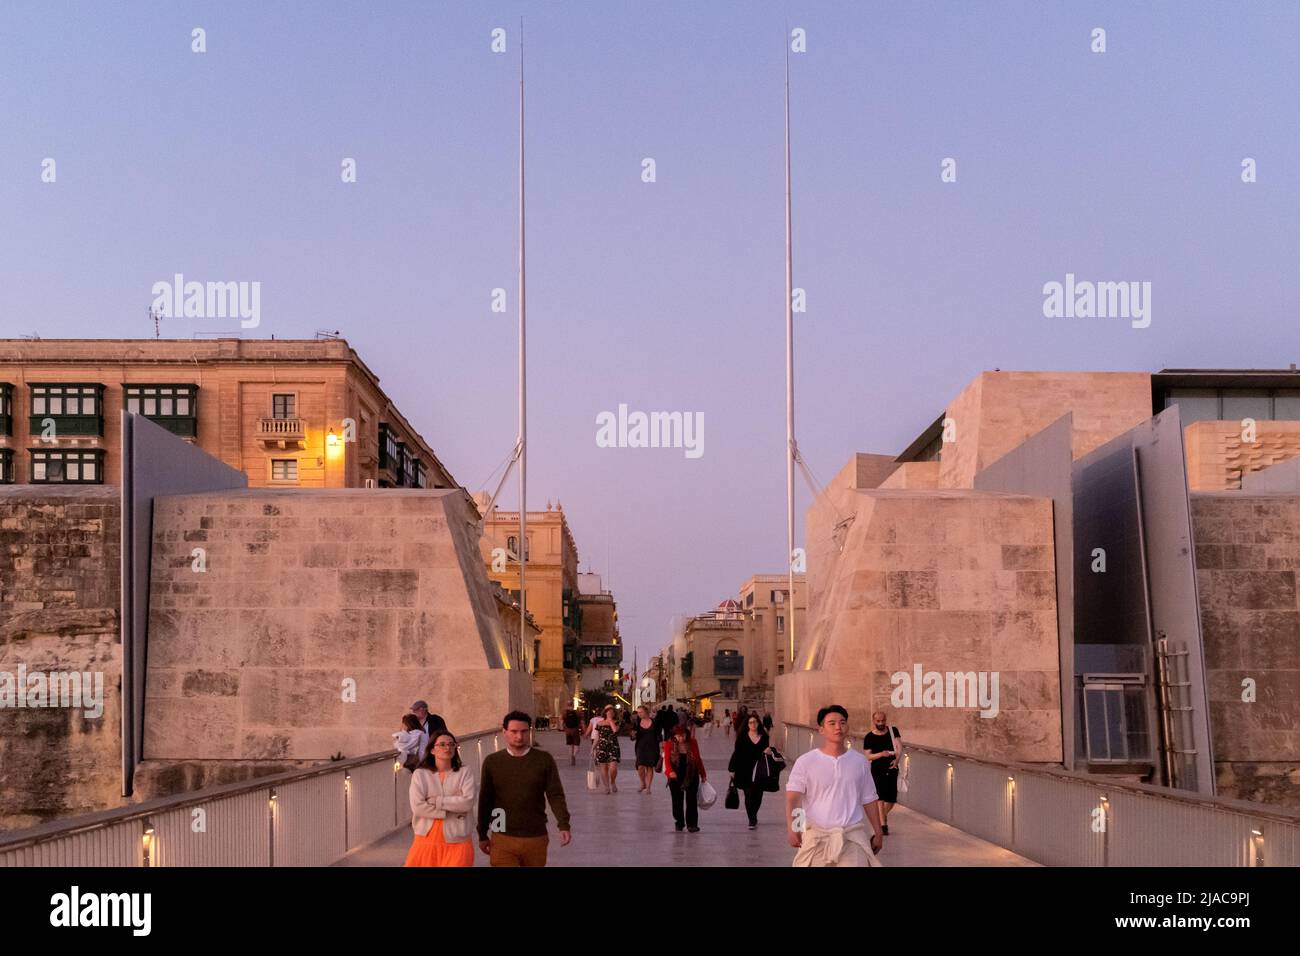 City Gate, Valletta, Malta Stock Photo